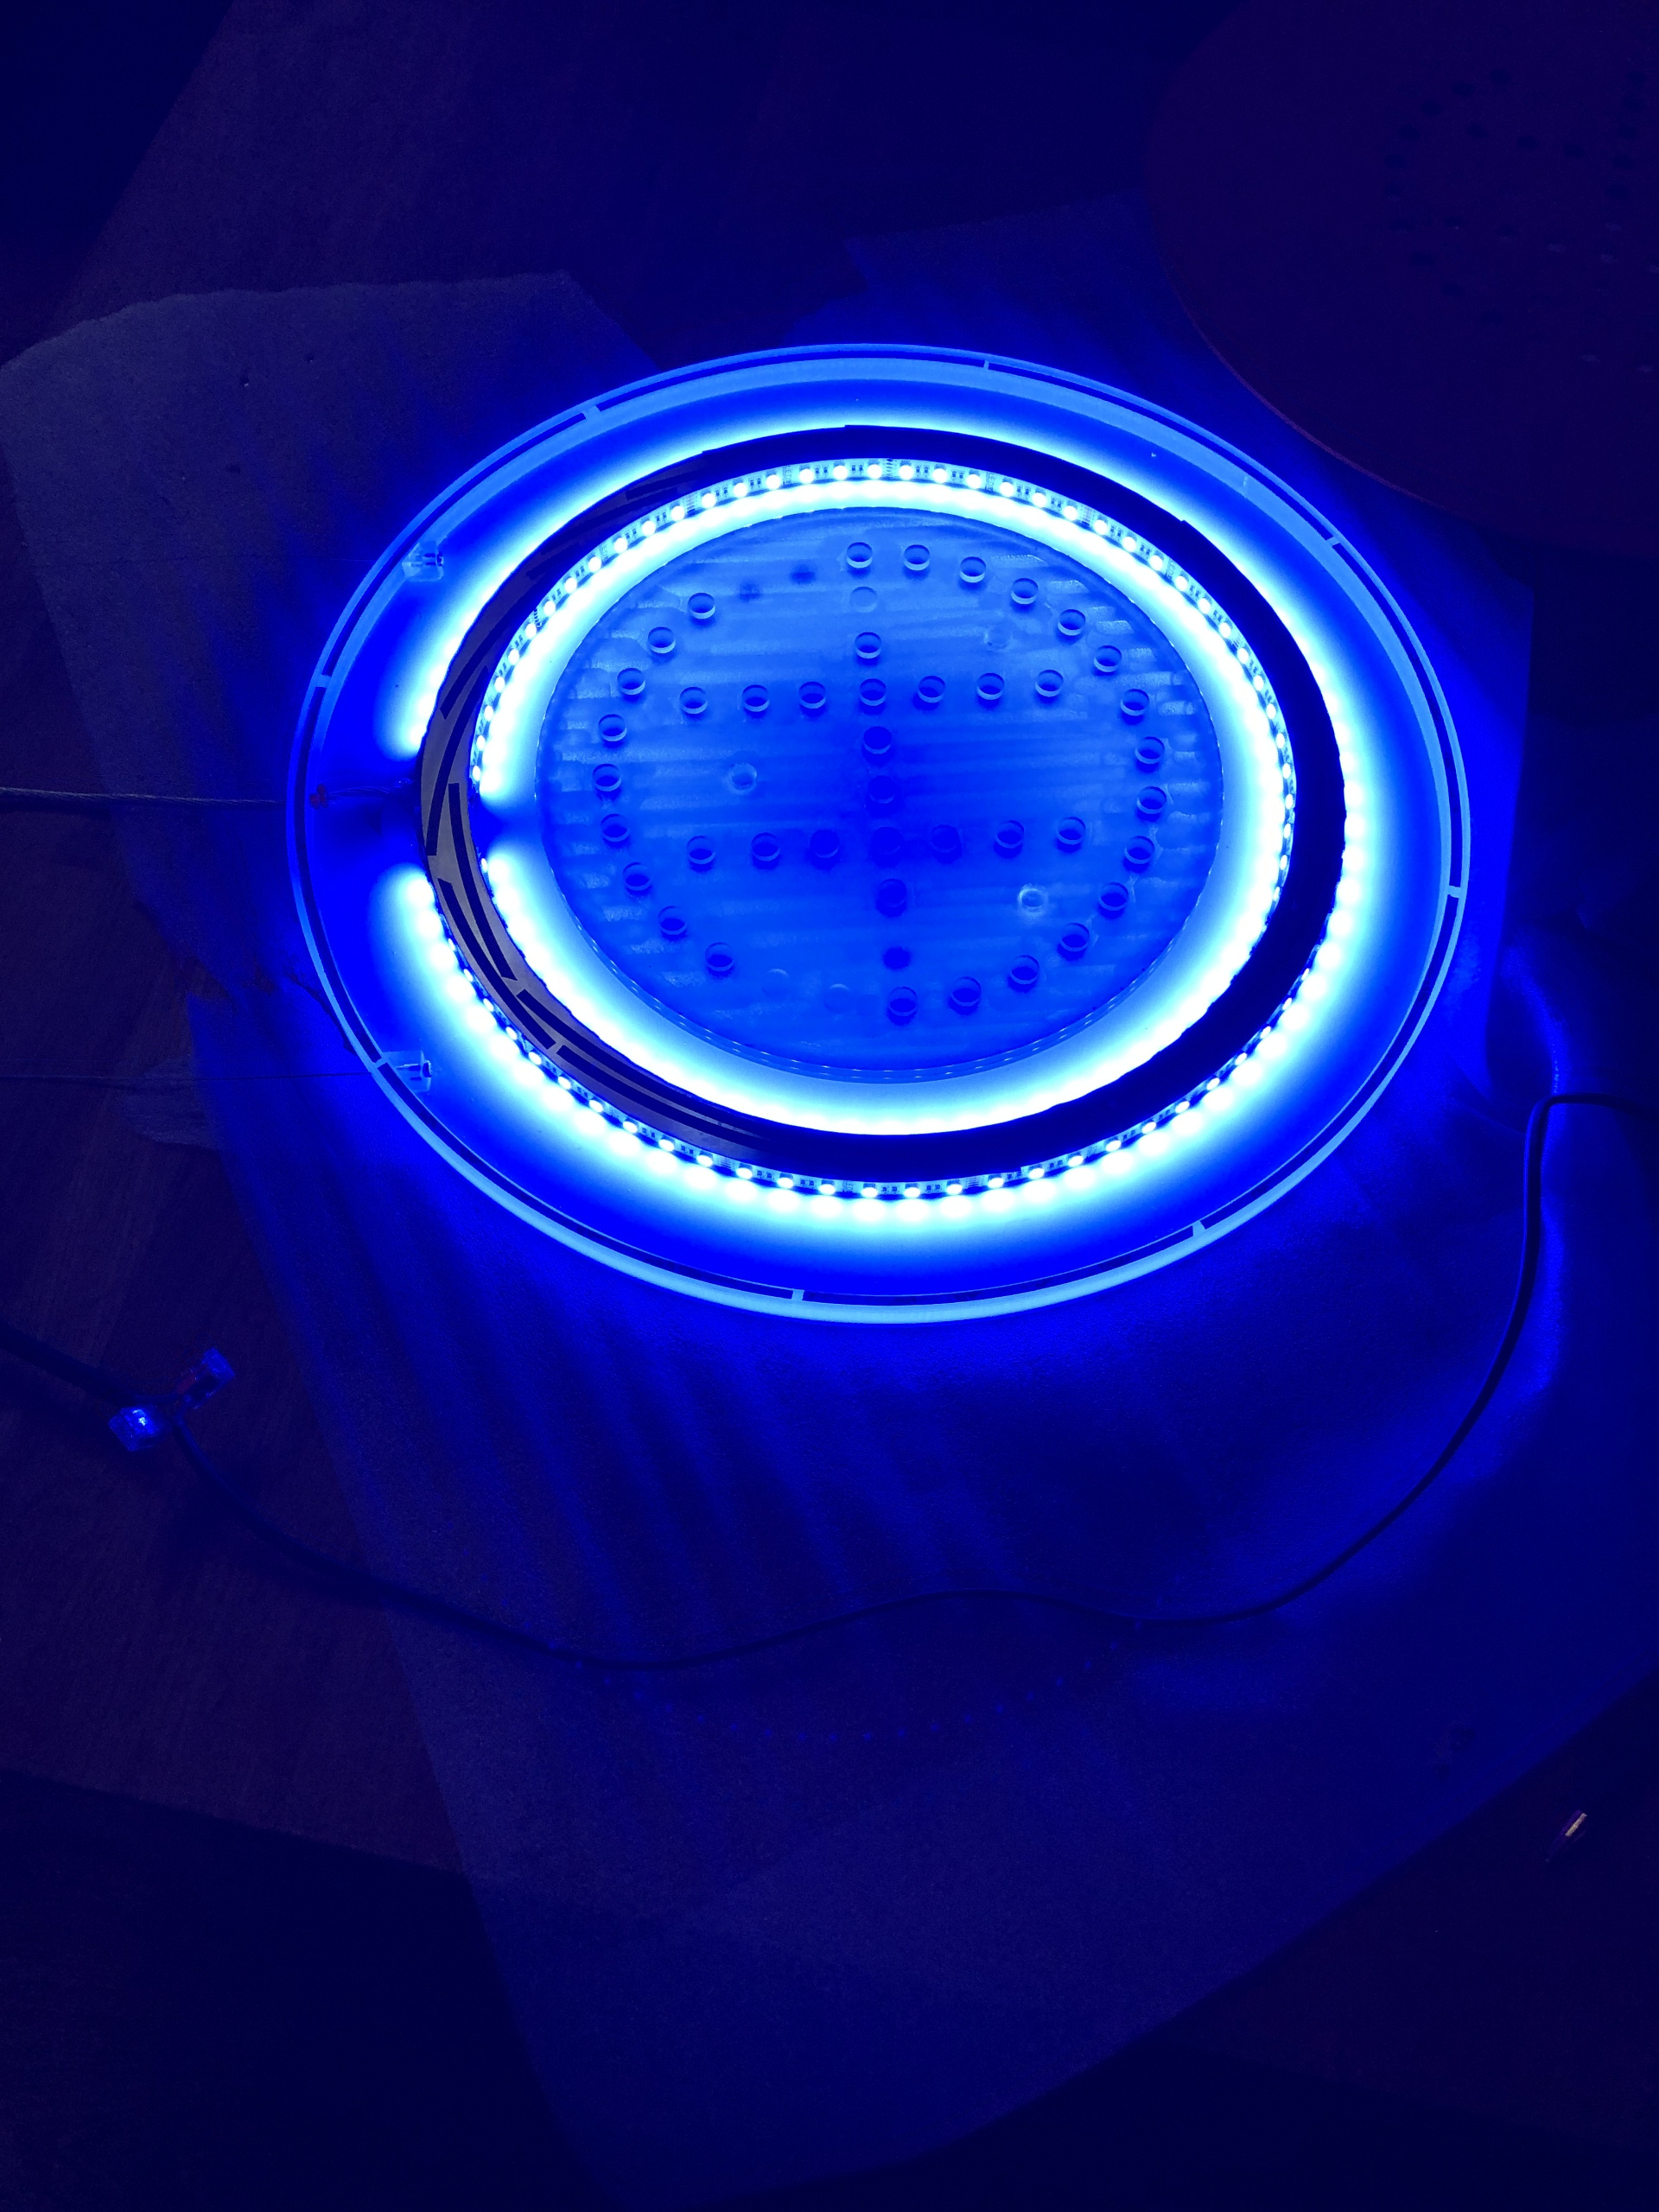 LED in blau